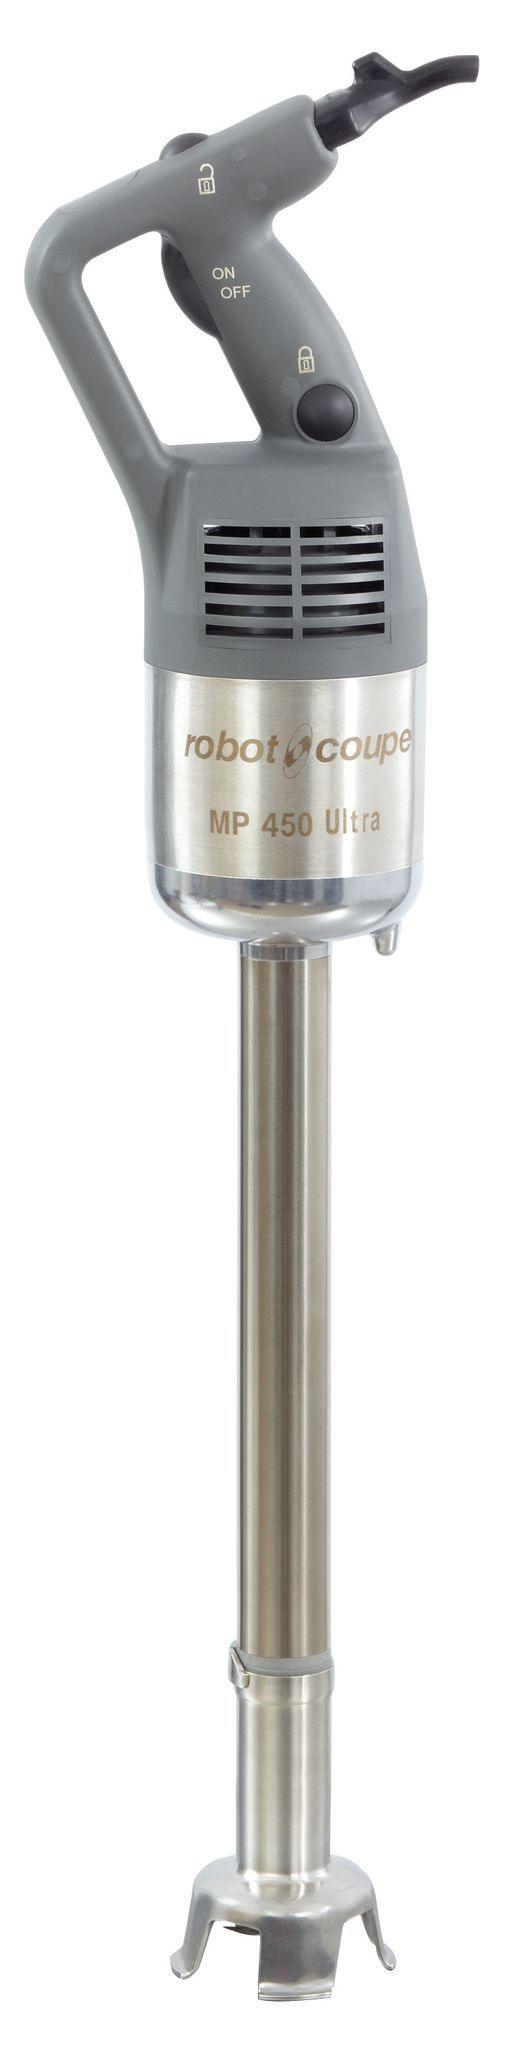 Robot Coupe MP450 Ultra Stick Blender Power Mixer - HospoStore